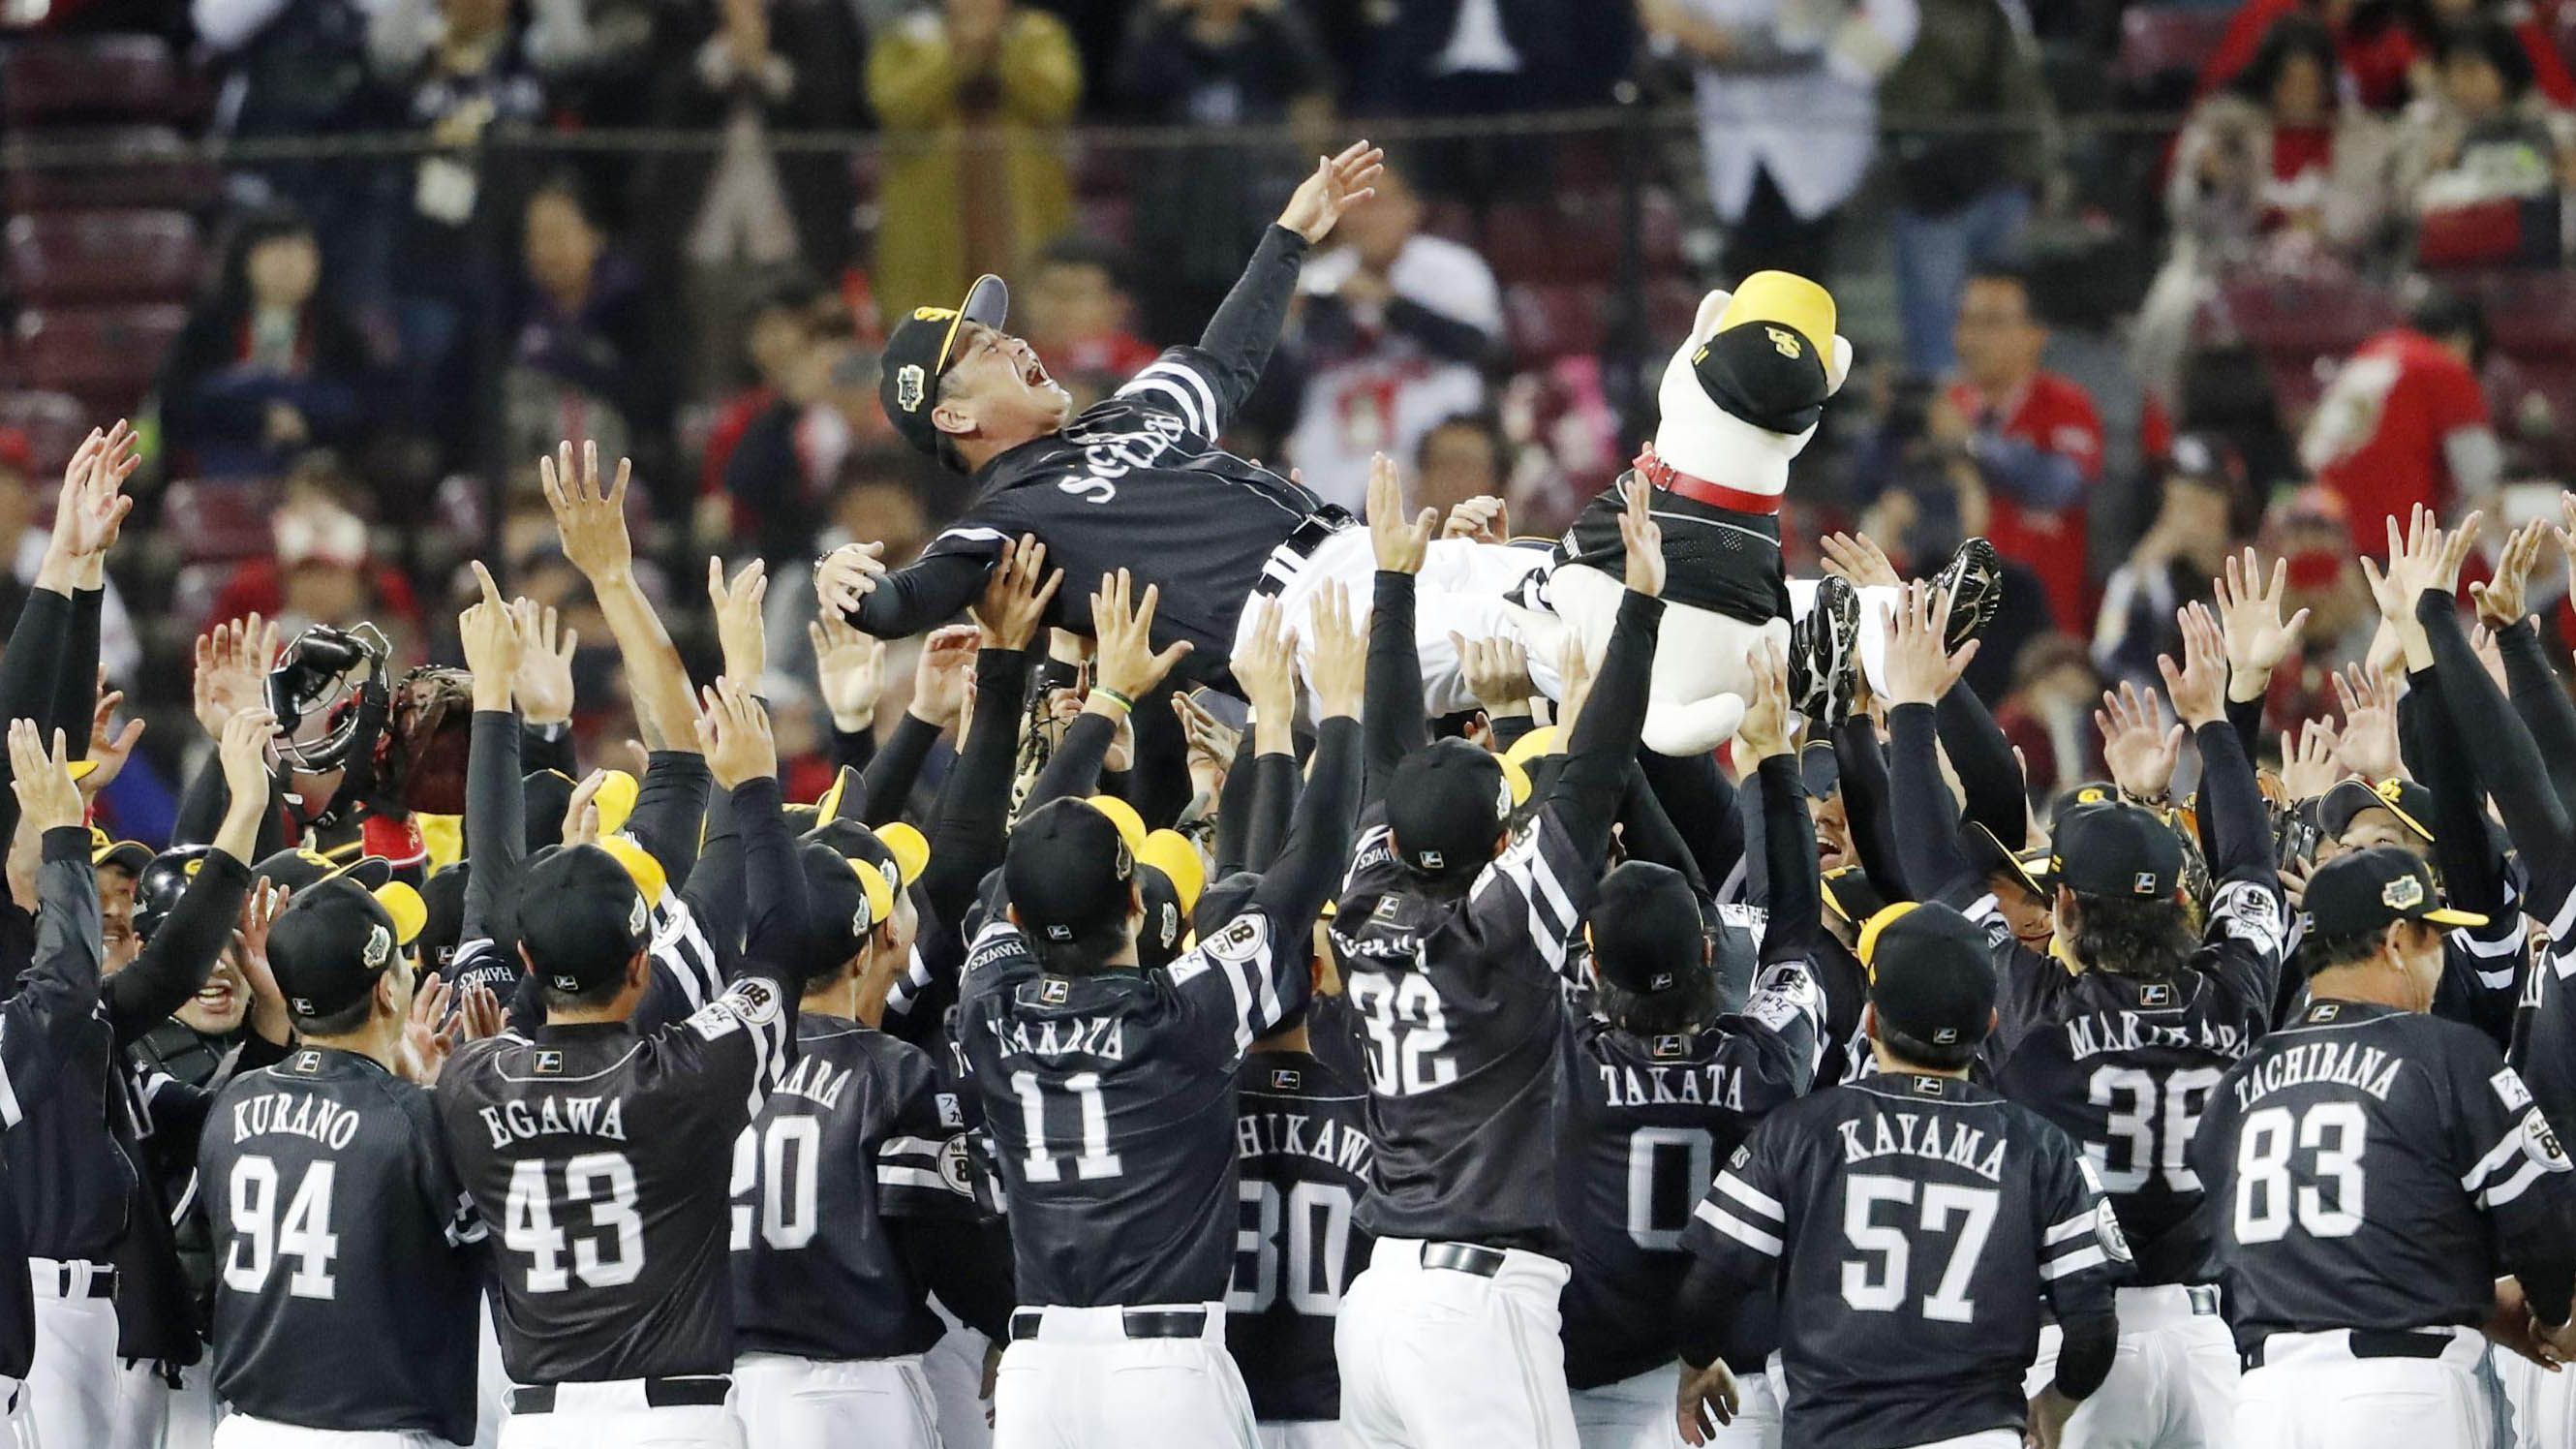 ホークスが 日本シリーズ で2連覇した要因 礒部公一のプロ野球徹底解説 東洋経済オンライン 社会をよくする経済ニュース